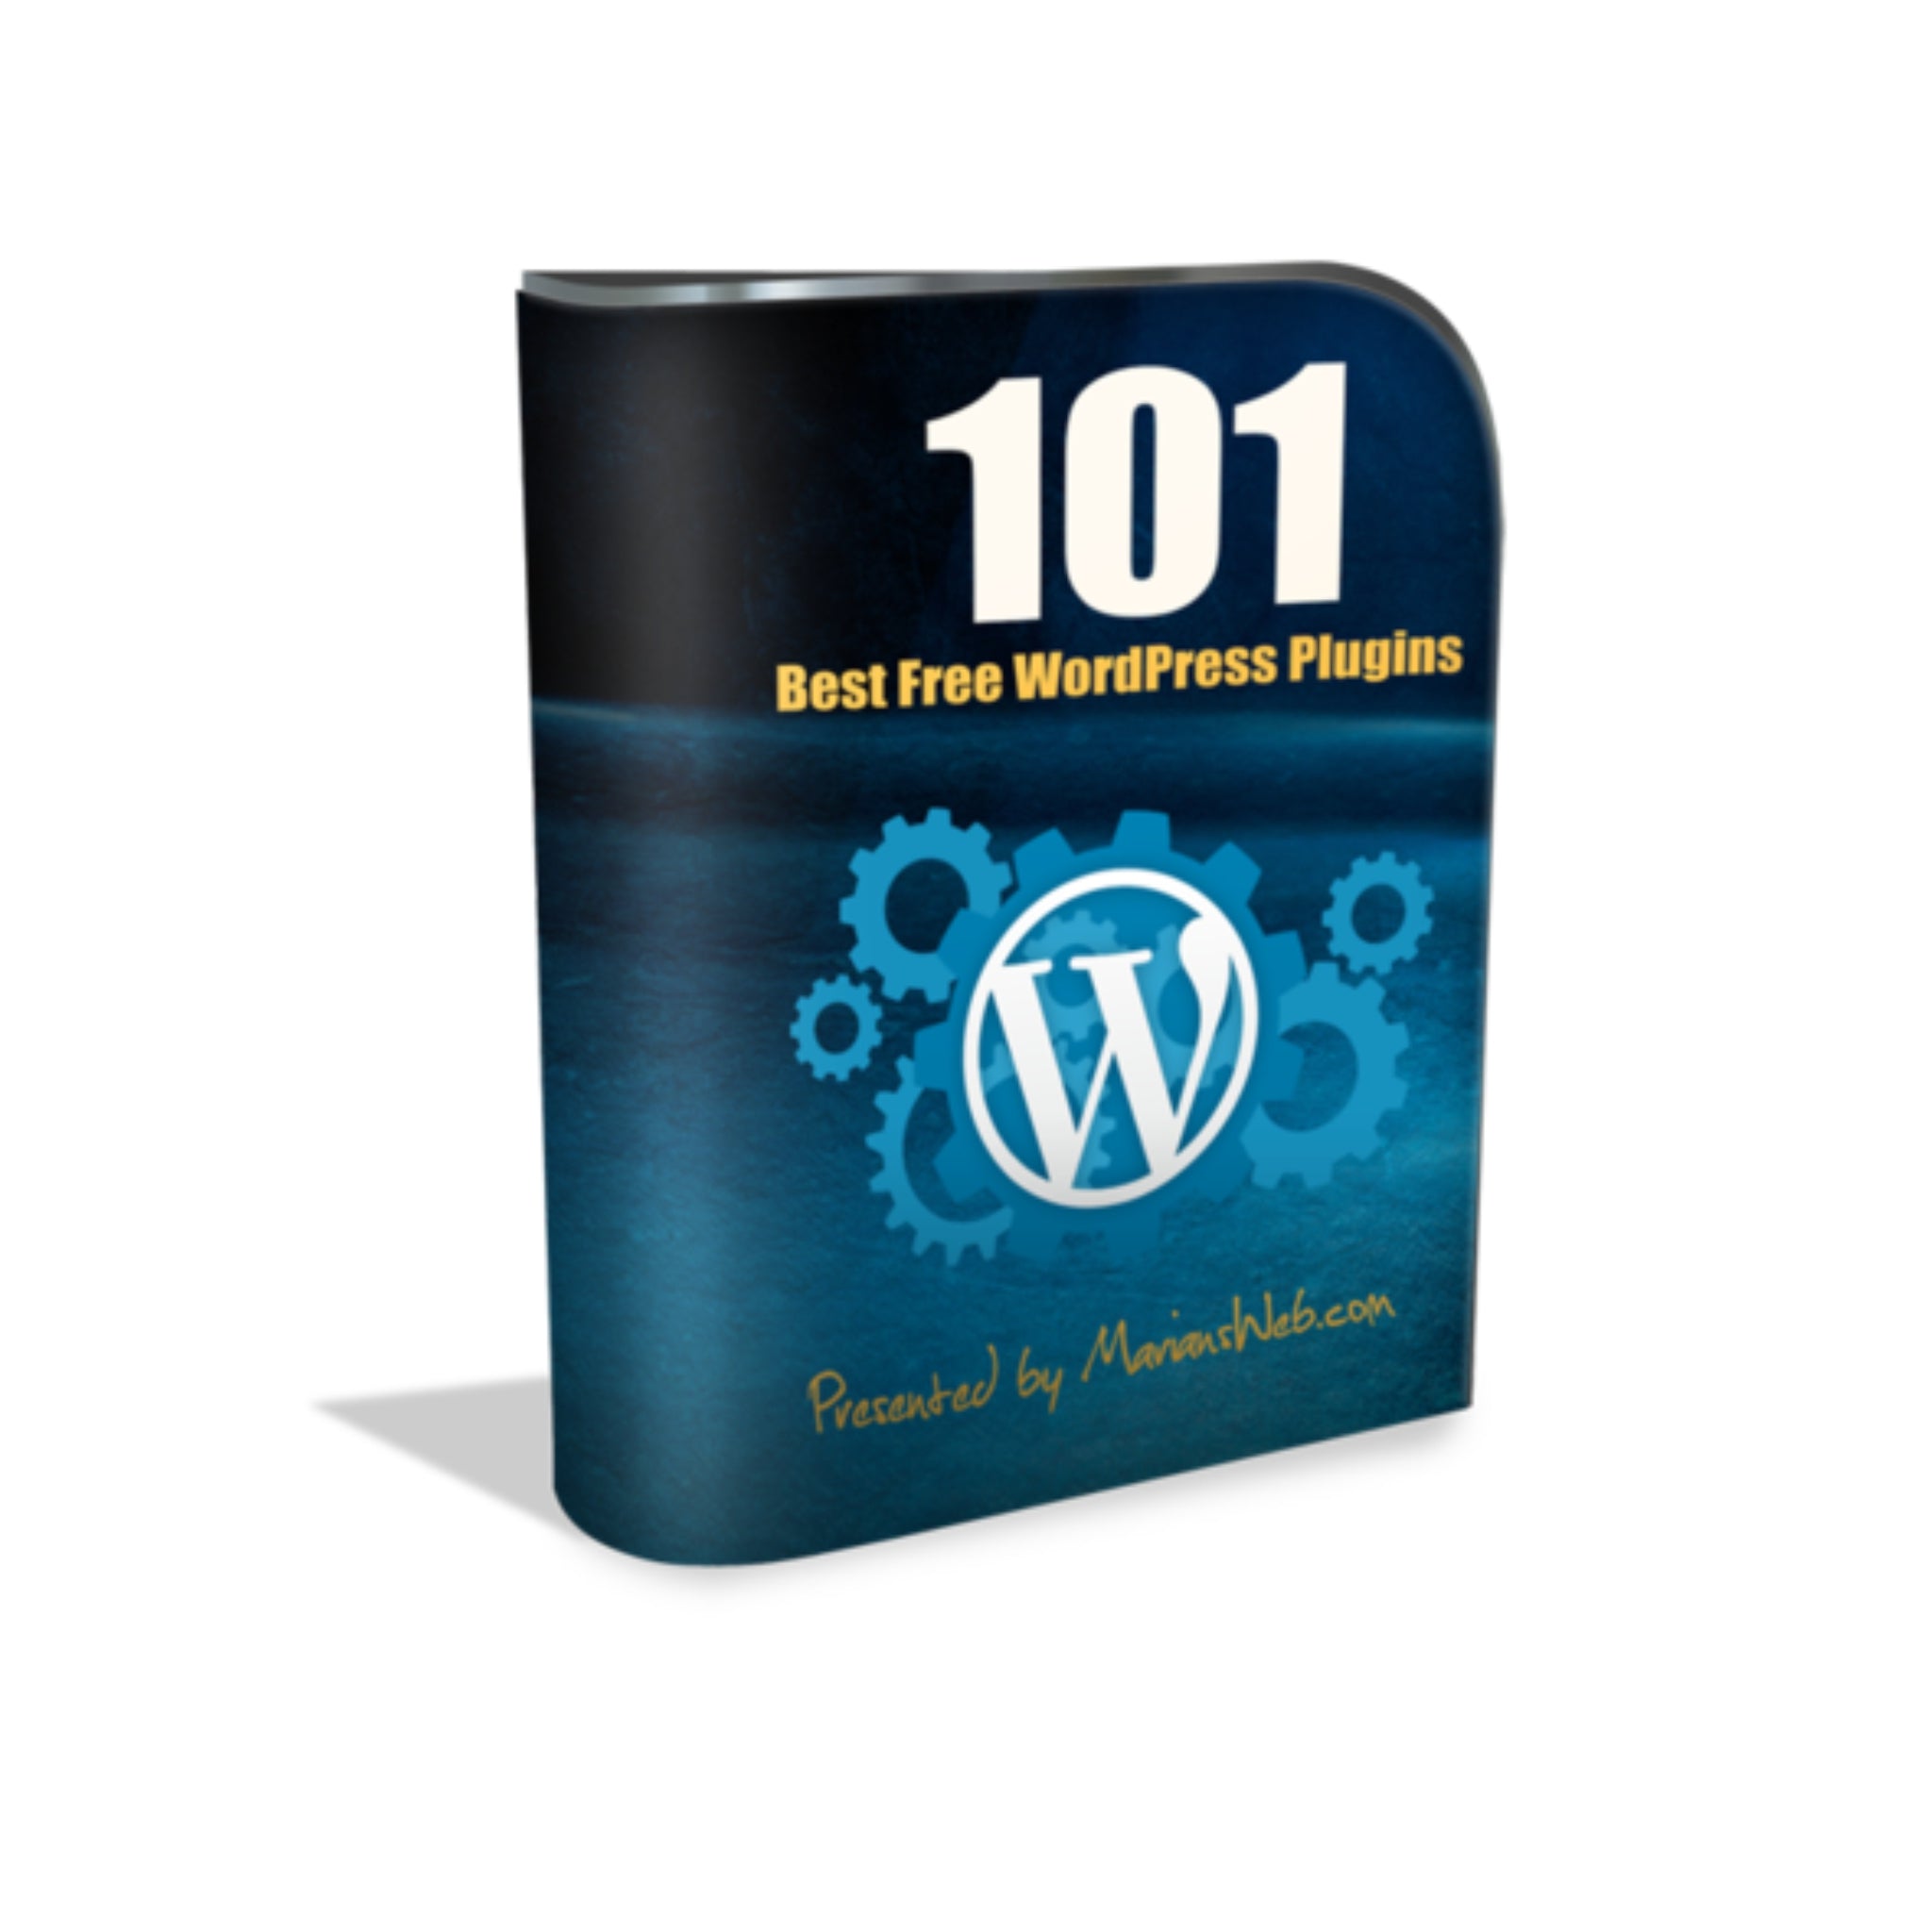 101 Best Free Wordpress Plugins Ebook